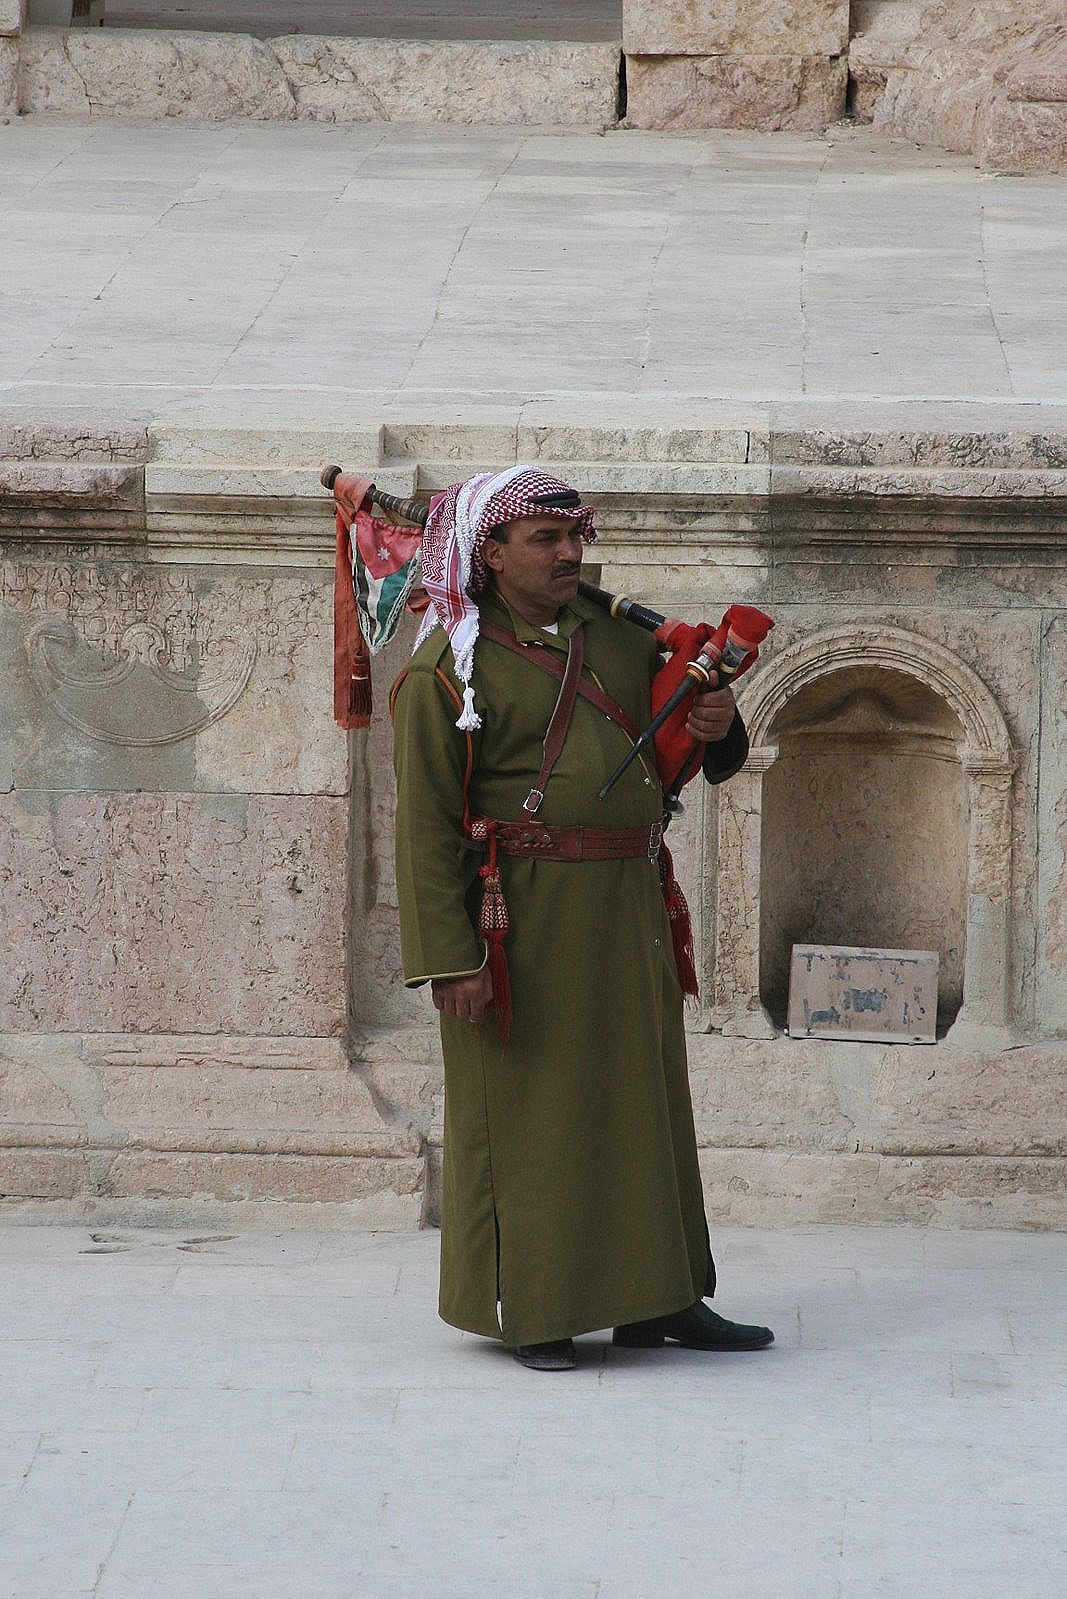 Local Musician in Jerash, Jordan